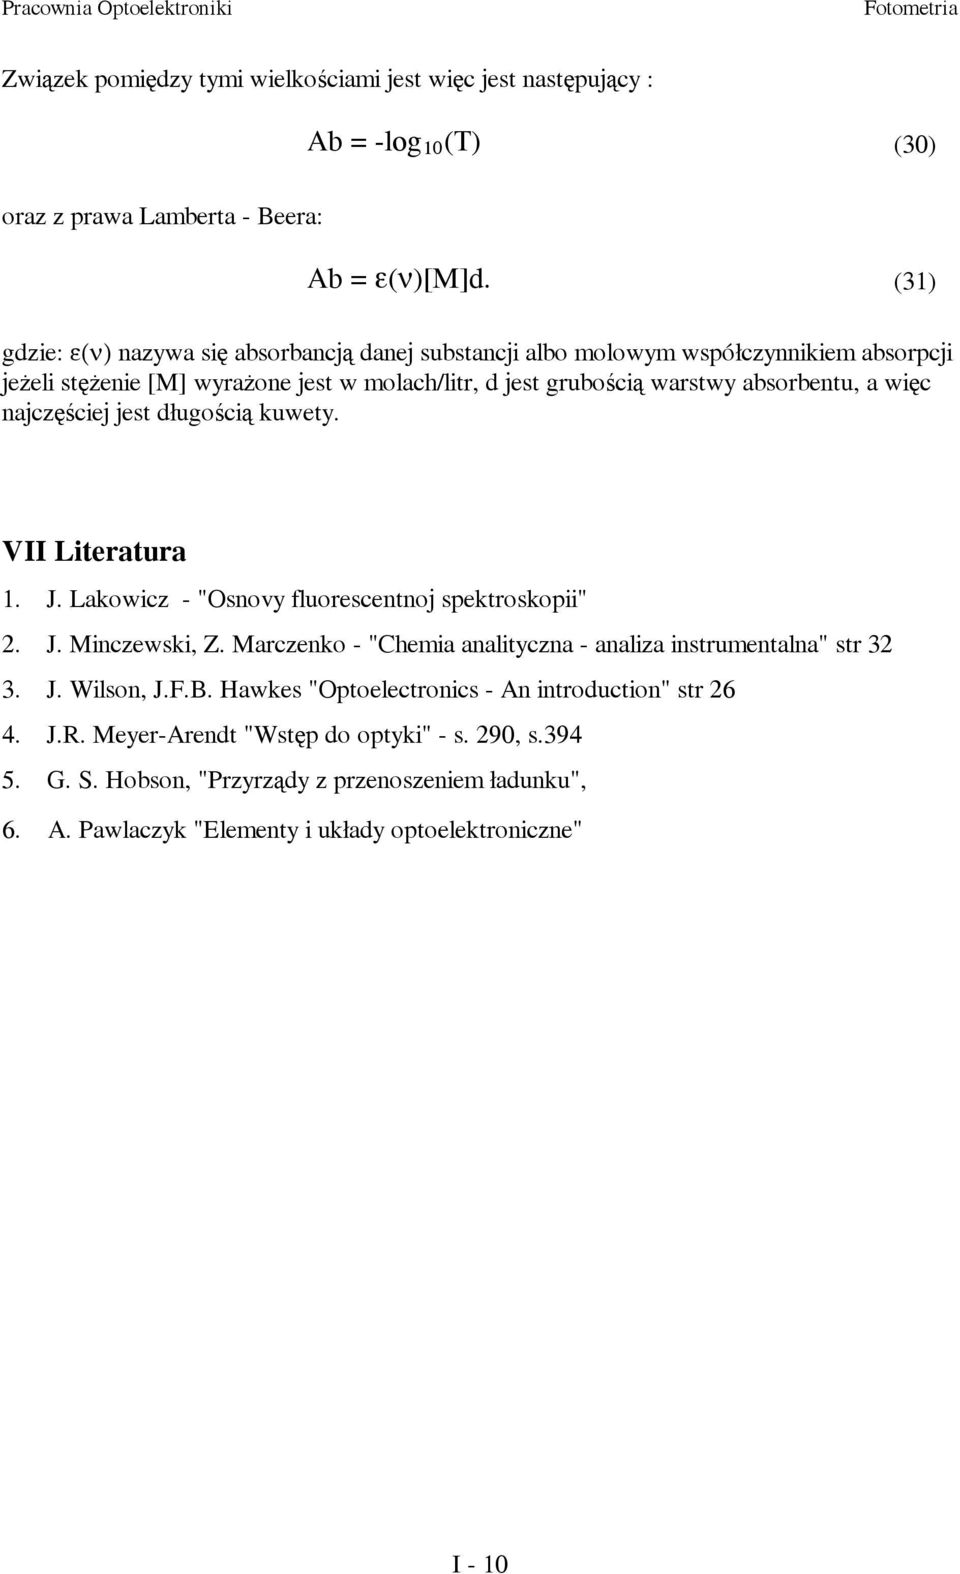 więc najczęściej jest długością kuwety. VII Literatura 1. J. Lakowicz - "Osnovy fluorescentnoj spektroskopii" 2. J. Minczewski, Z.